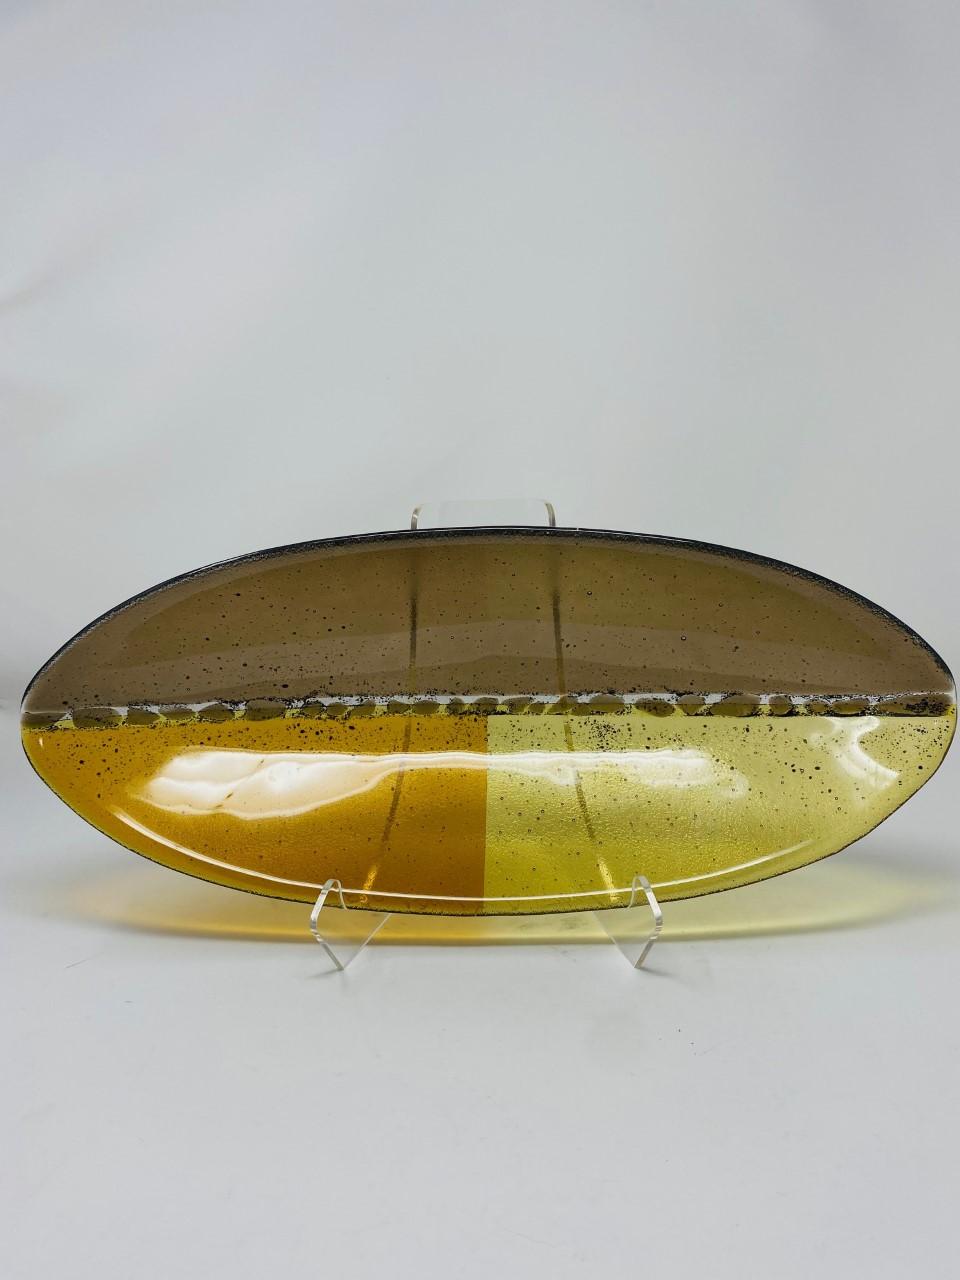 Schöne und grafische ovale Glasschale von Rosenthal. Dieses schöne Stück aus den späten 90er Jahren ist grafisch und detailliert. Er hat gelbe und bernsteinfarbene Töne zusammen mit einem rauchvioletten Ton in einer kanuförmigen Form. Das Stück ist